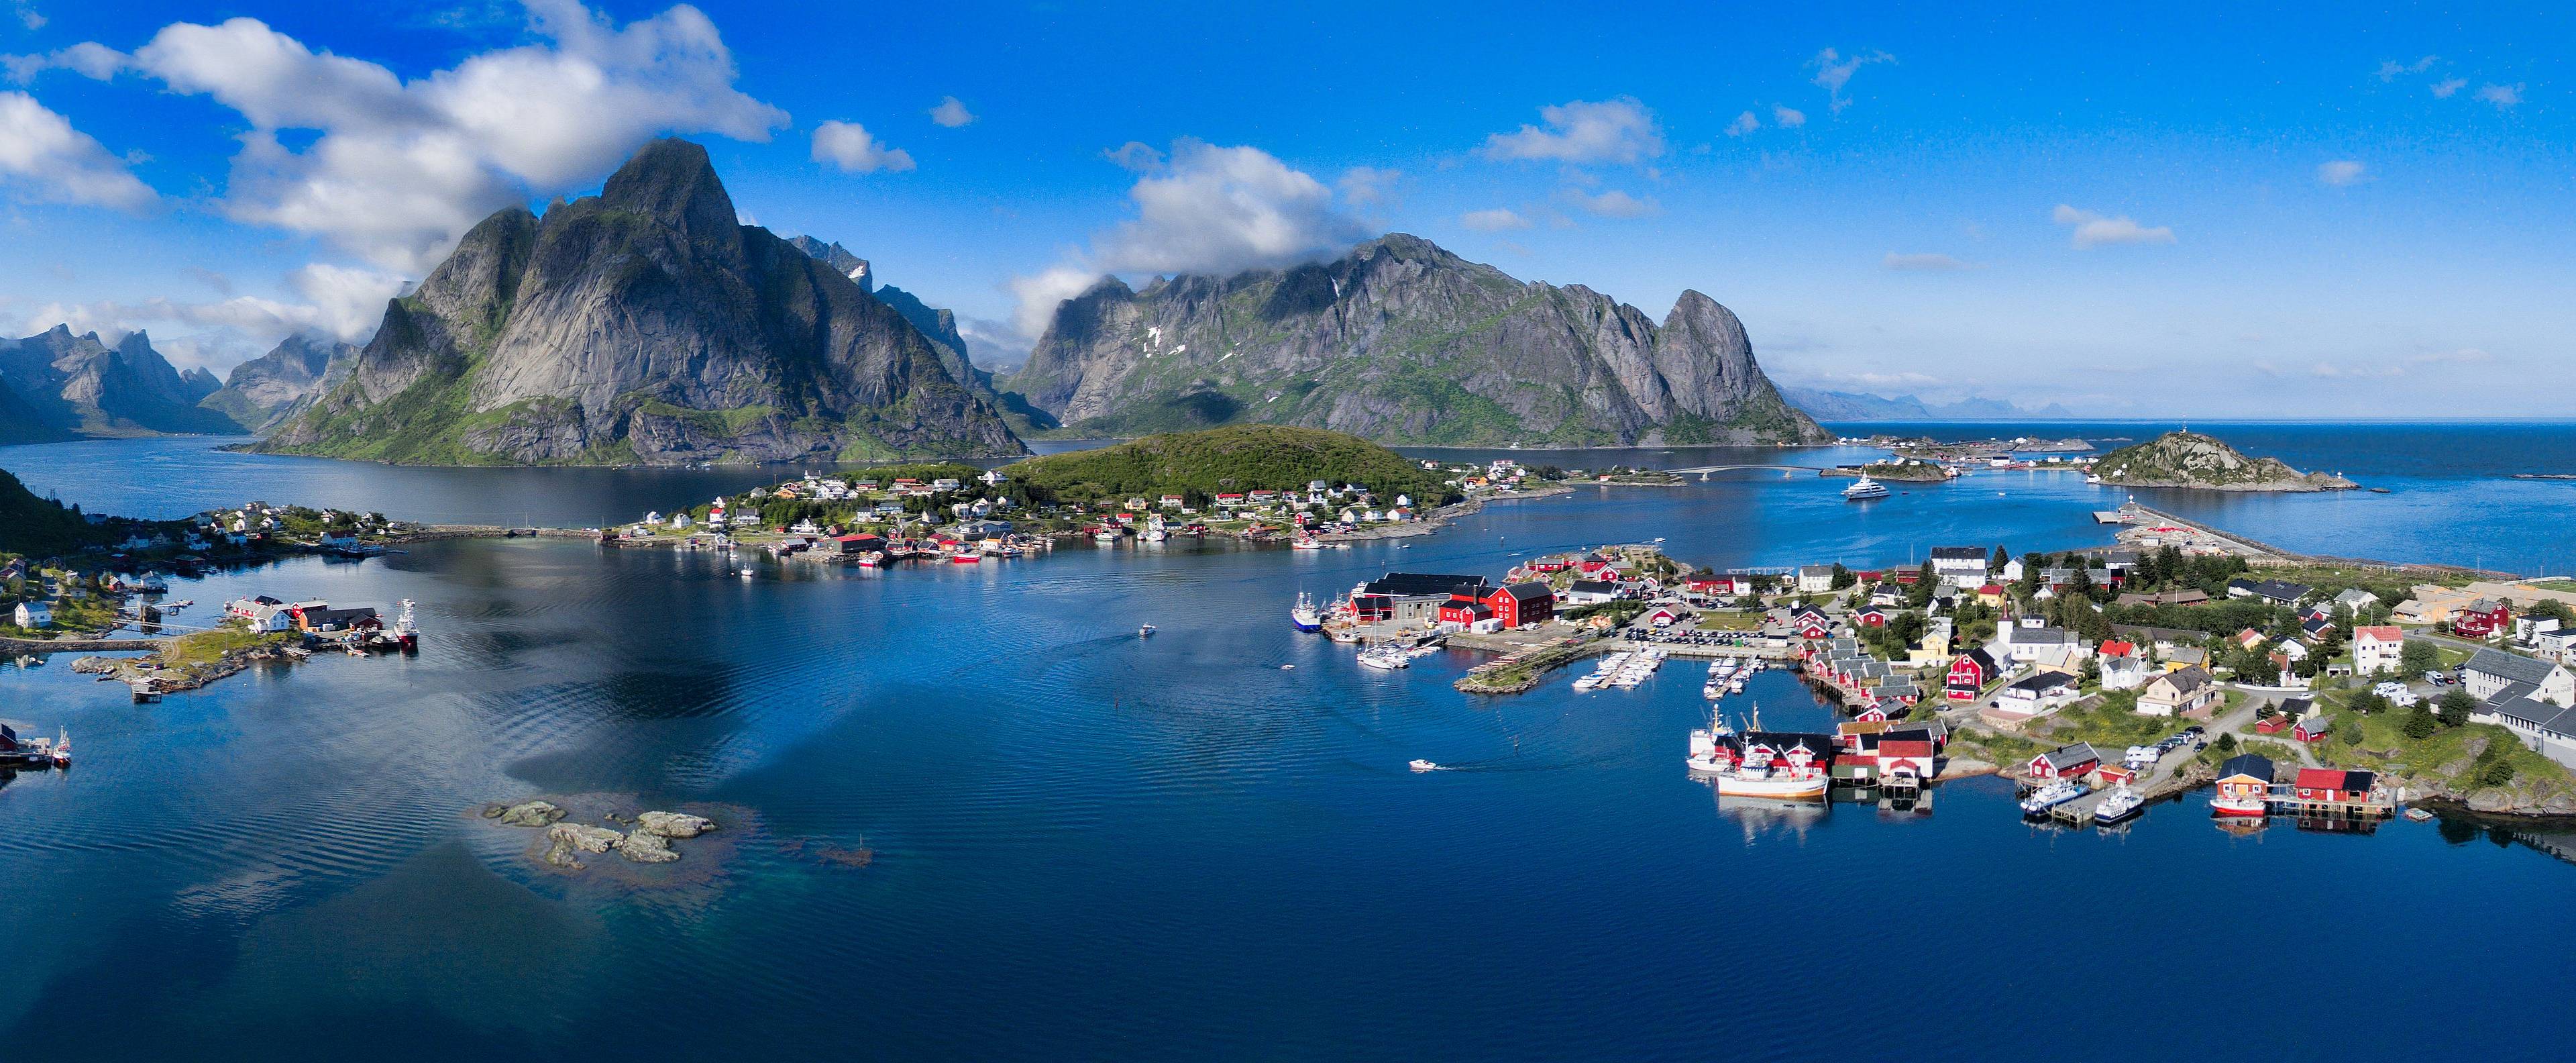 Crea tu viaje a Noruega en primavera 100% a medida